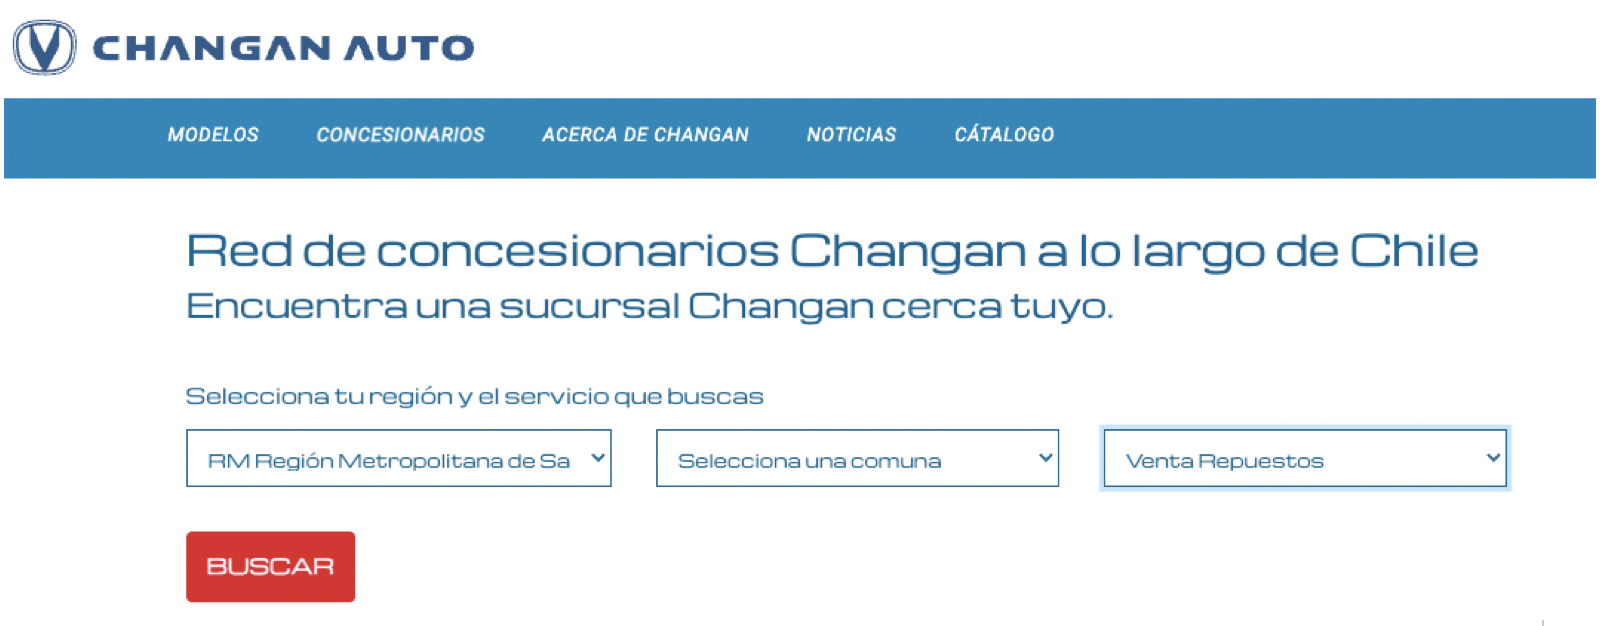 Changan CX 70 opiniones en Chile - buscador